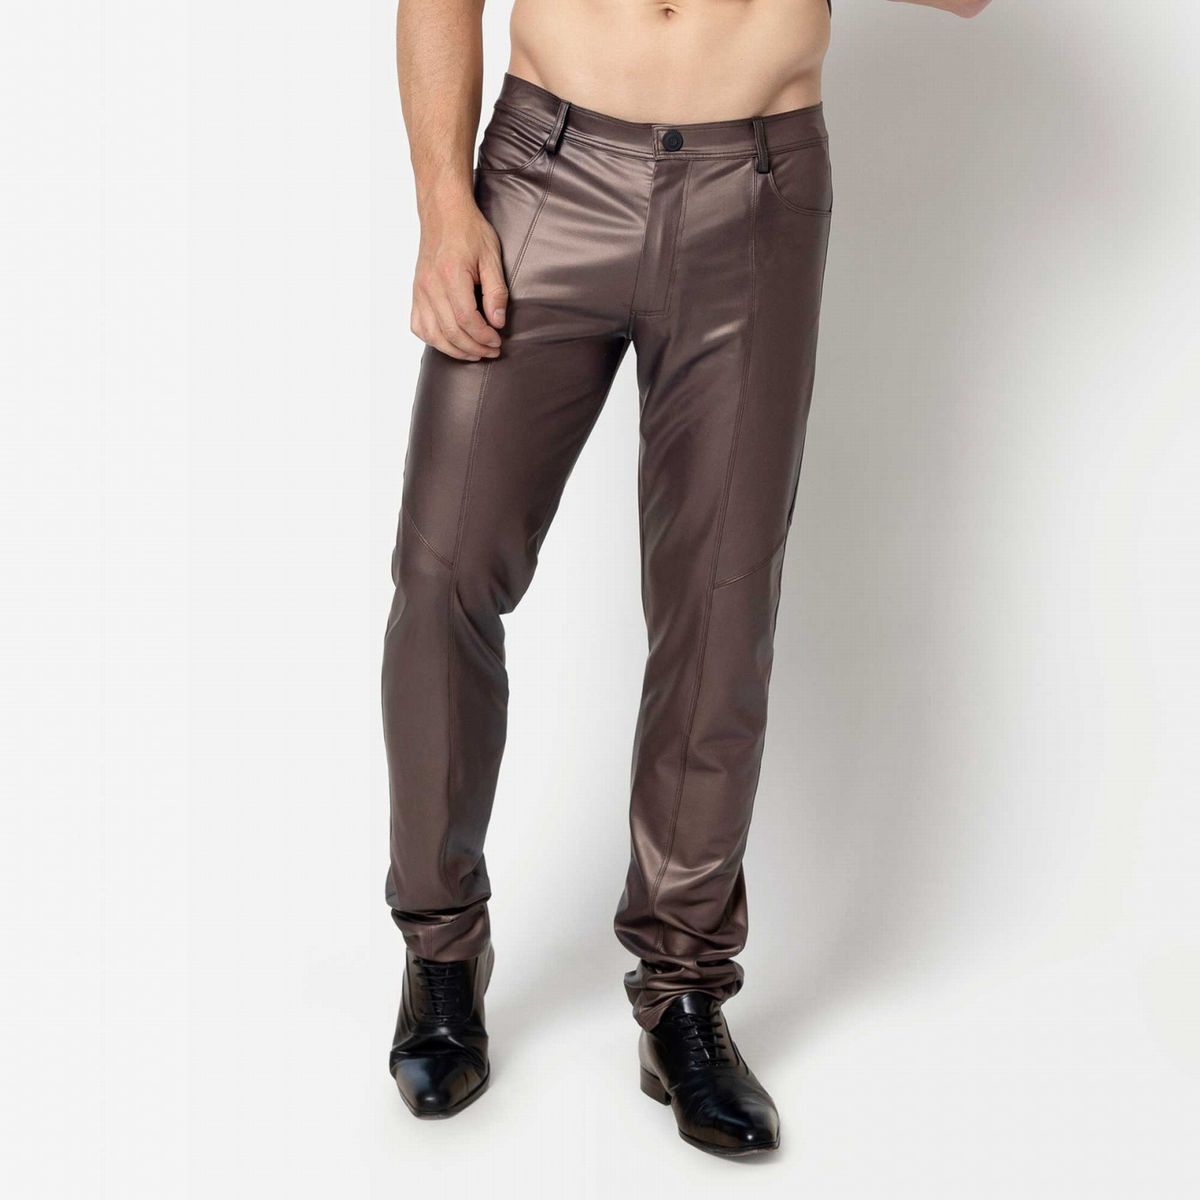 ketil-brown-wetlook-trousers.jpg